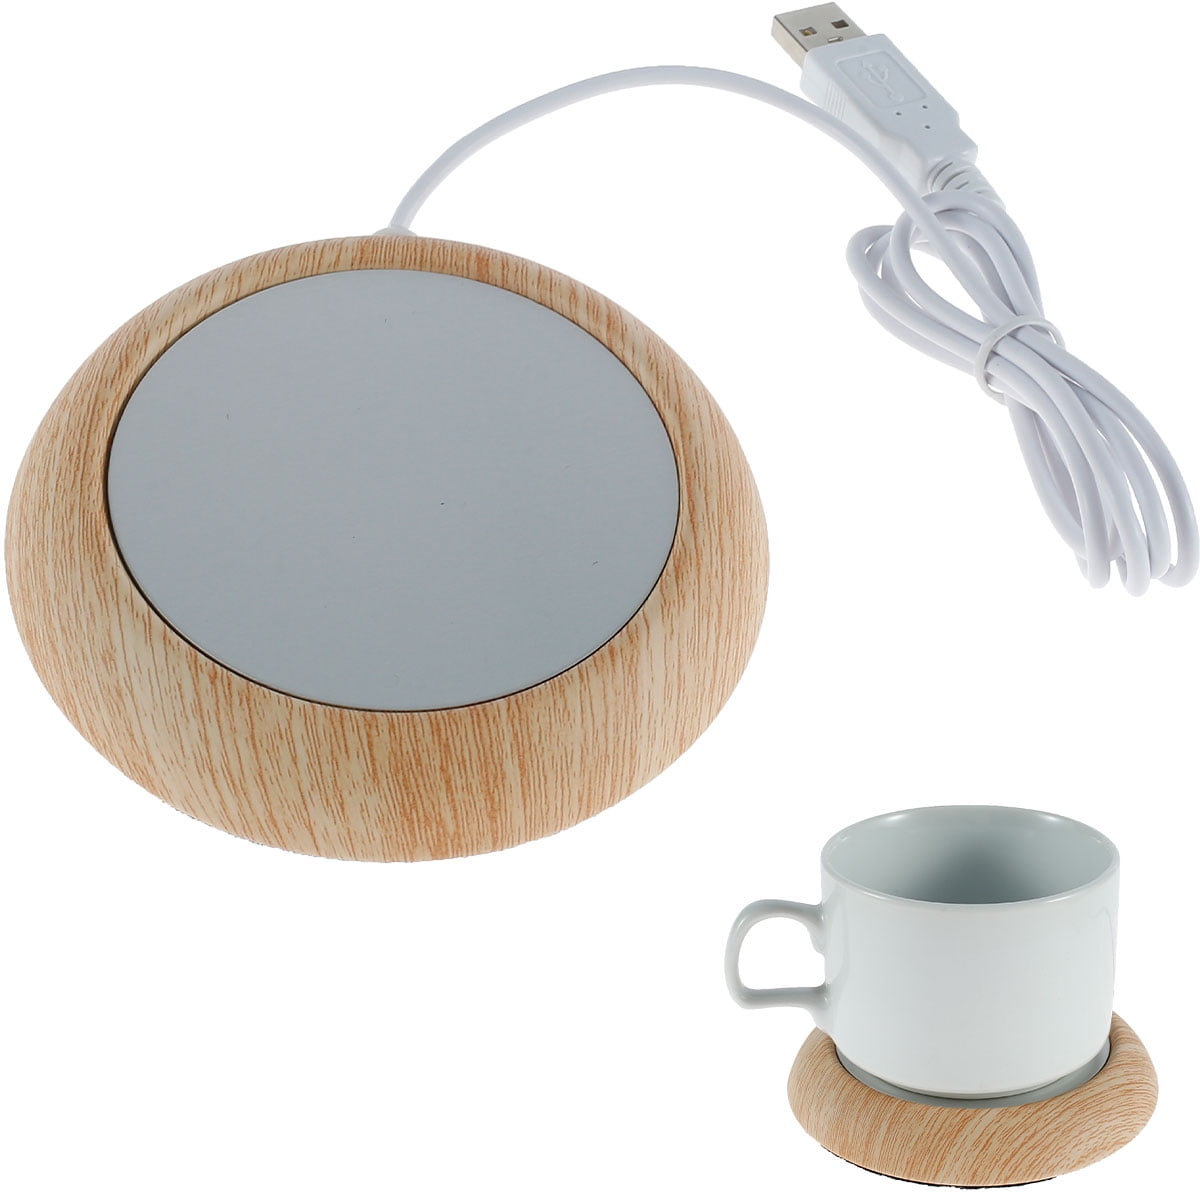 Mosey USB Coffee Mug Cup Warmer Plug-Play Good Thermal